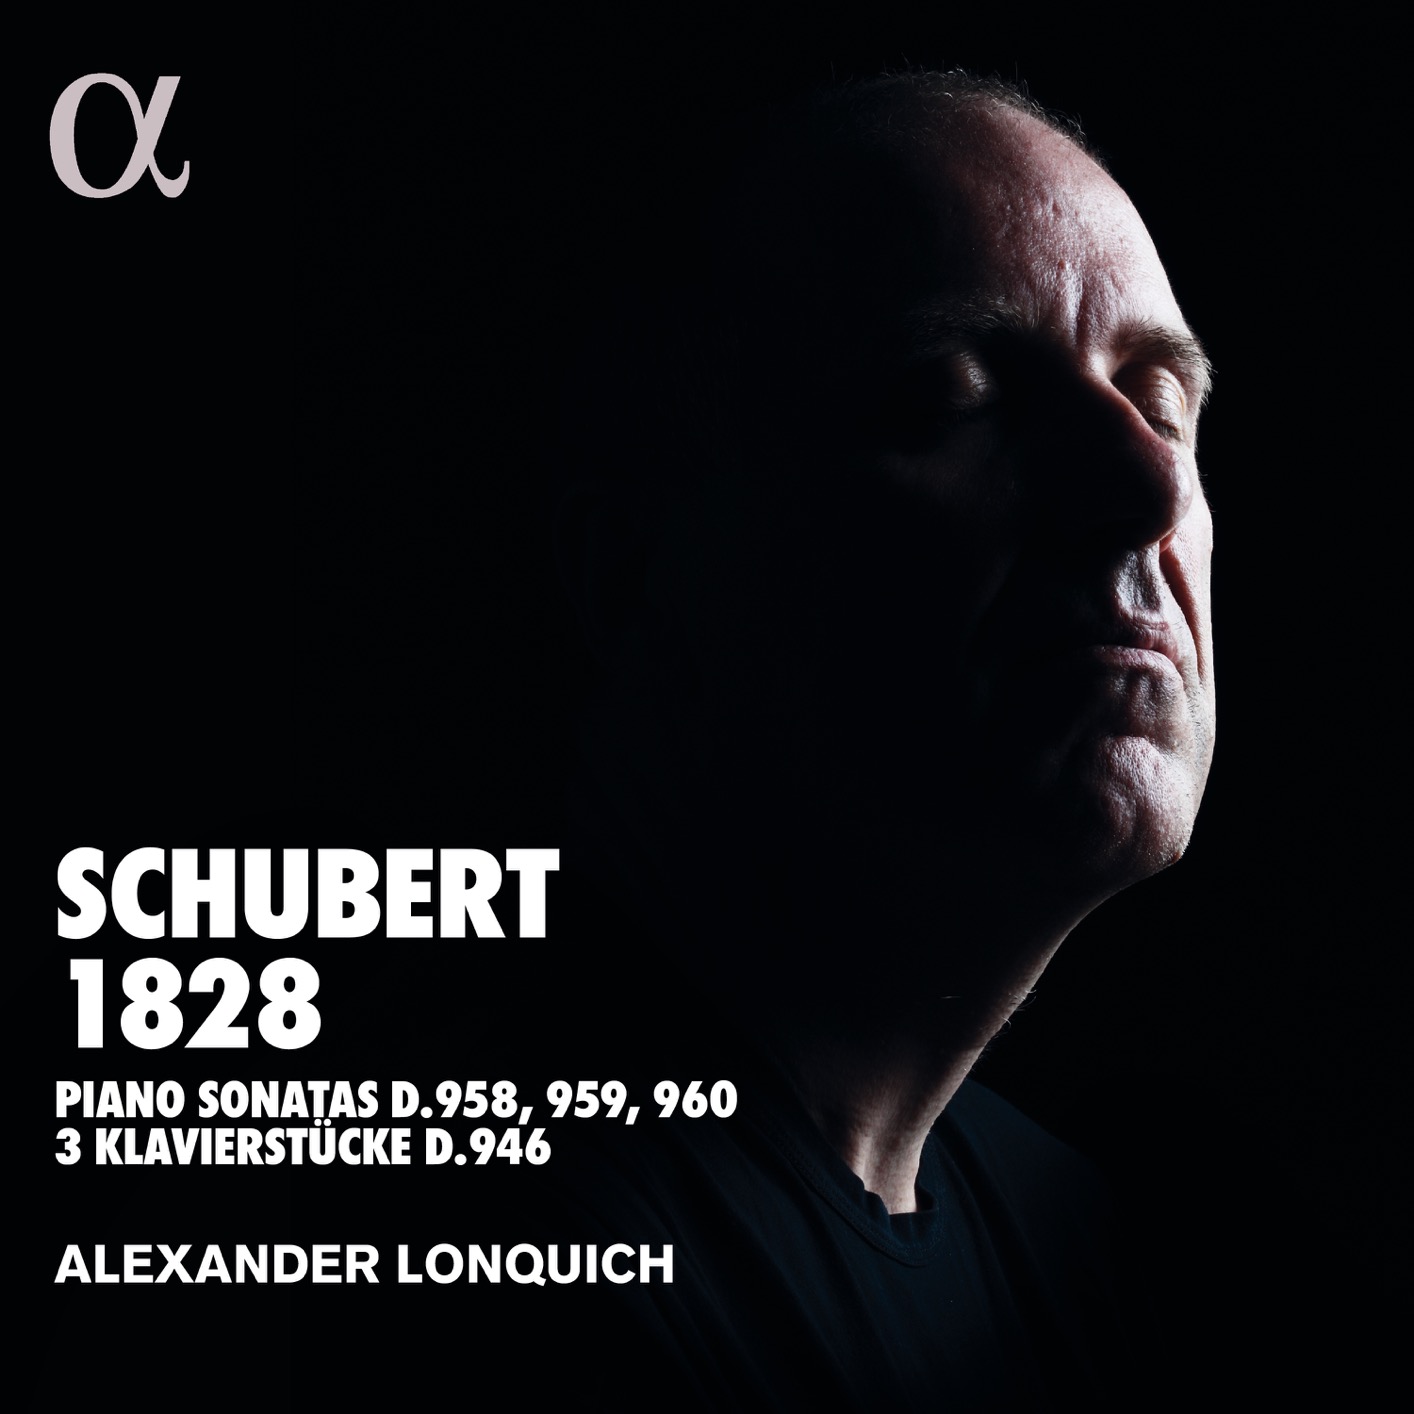 Alexander Lonquich - Schubert 1828 (2018) [FLAC 24bit/96kHz]